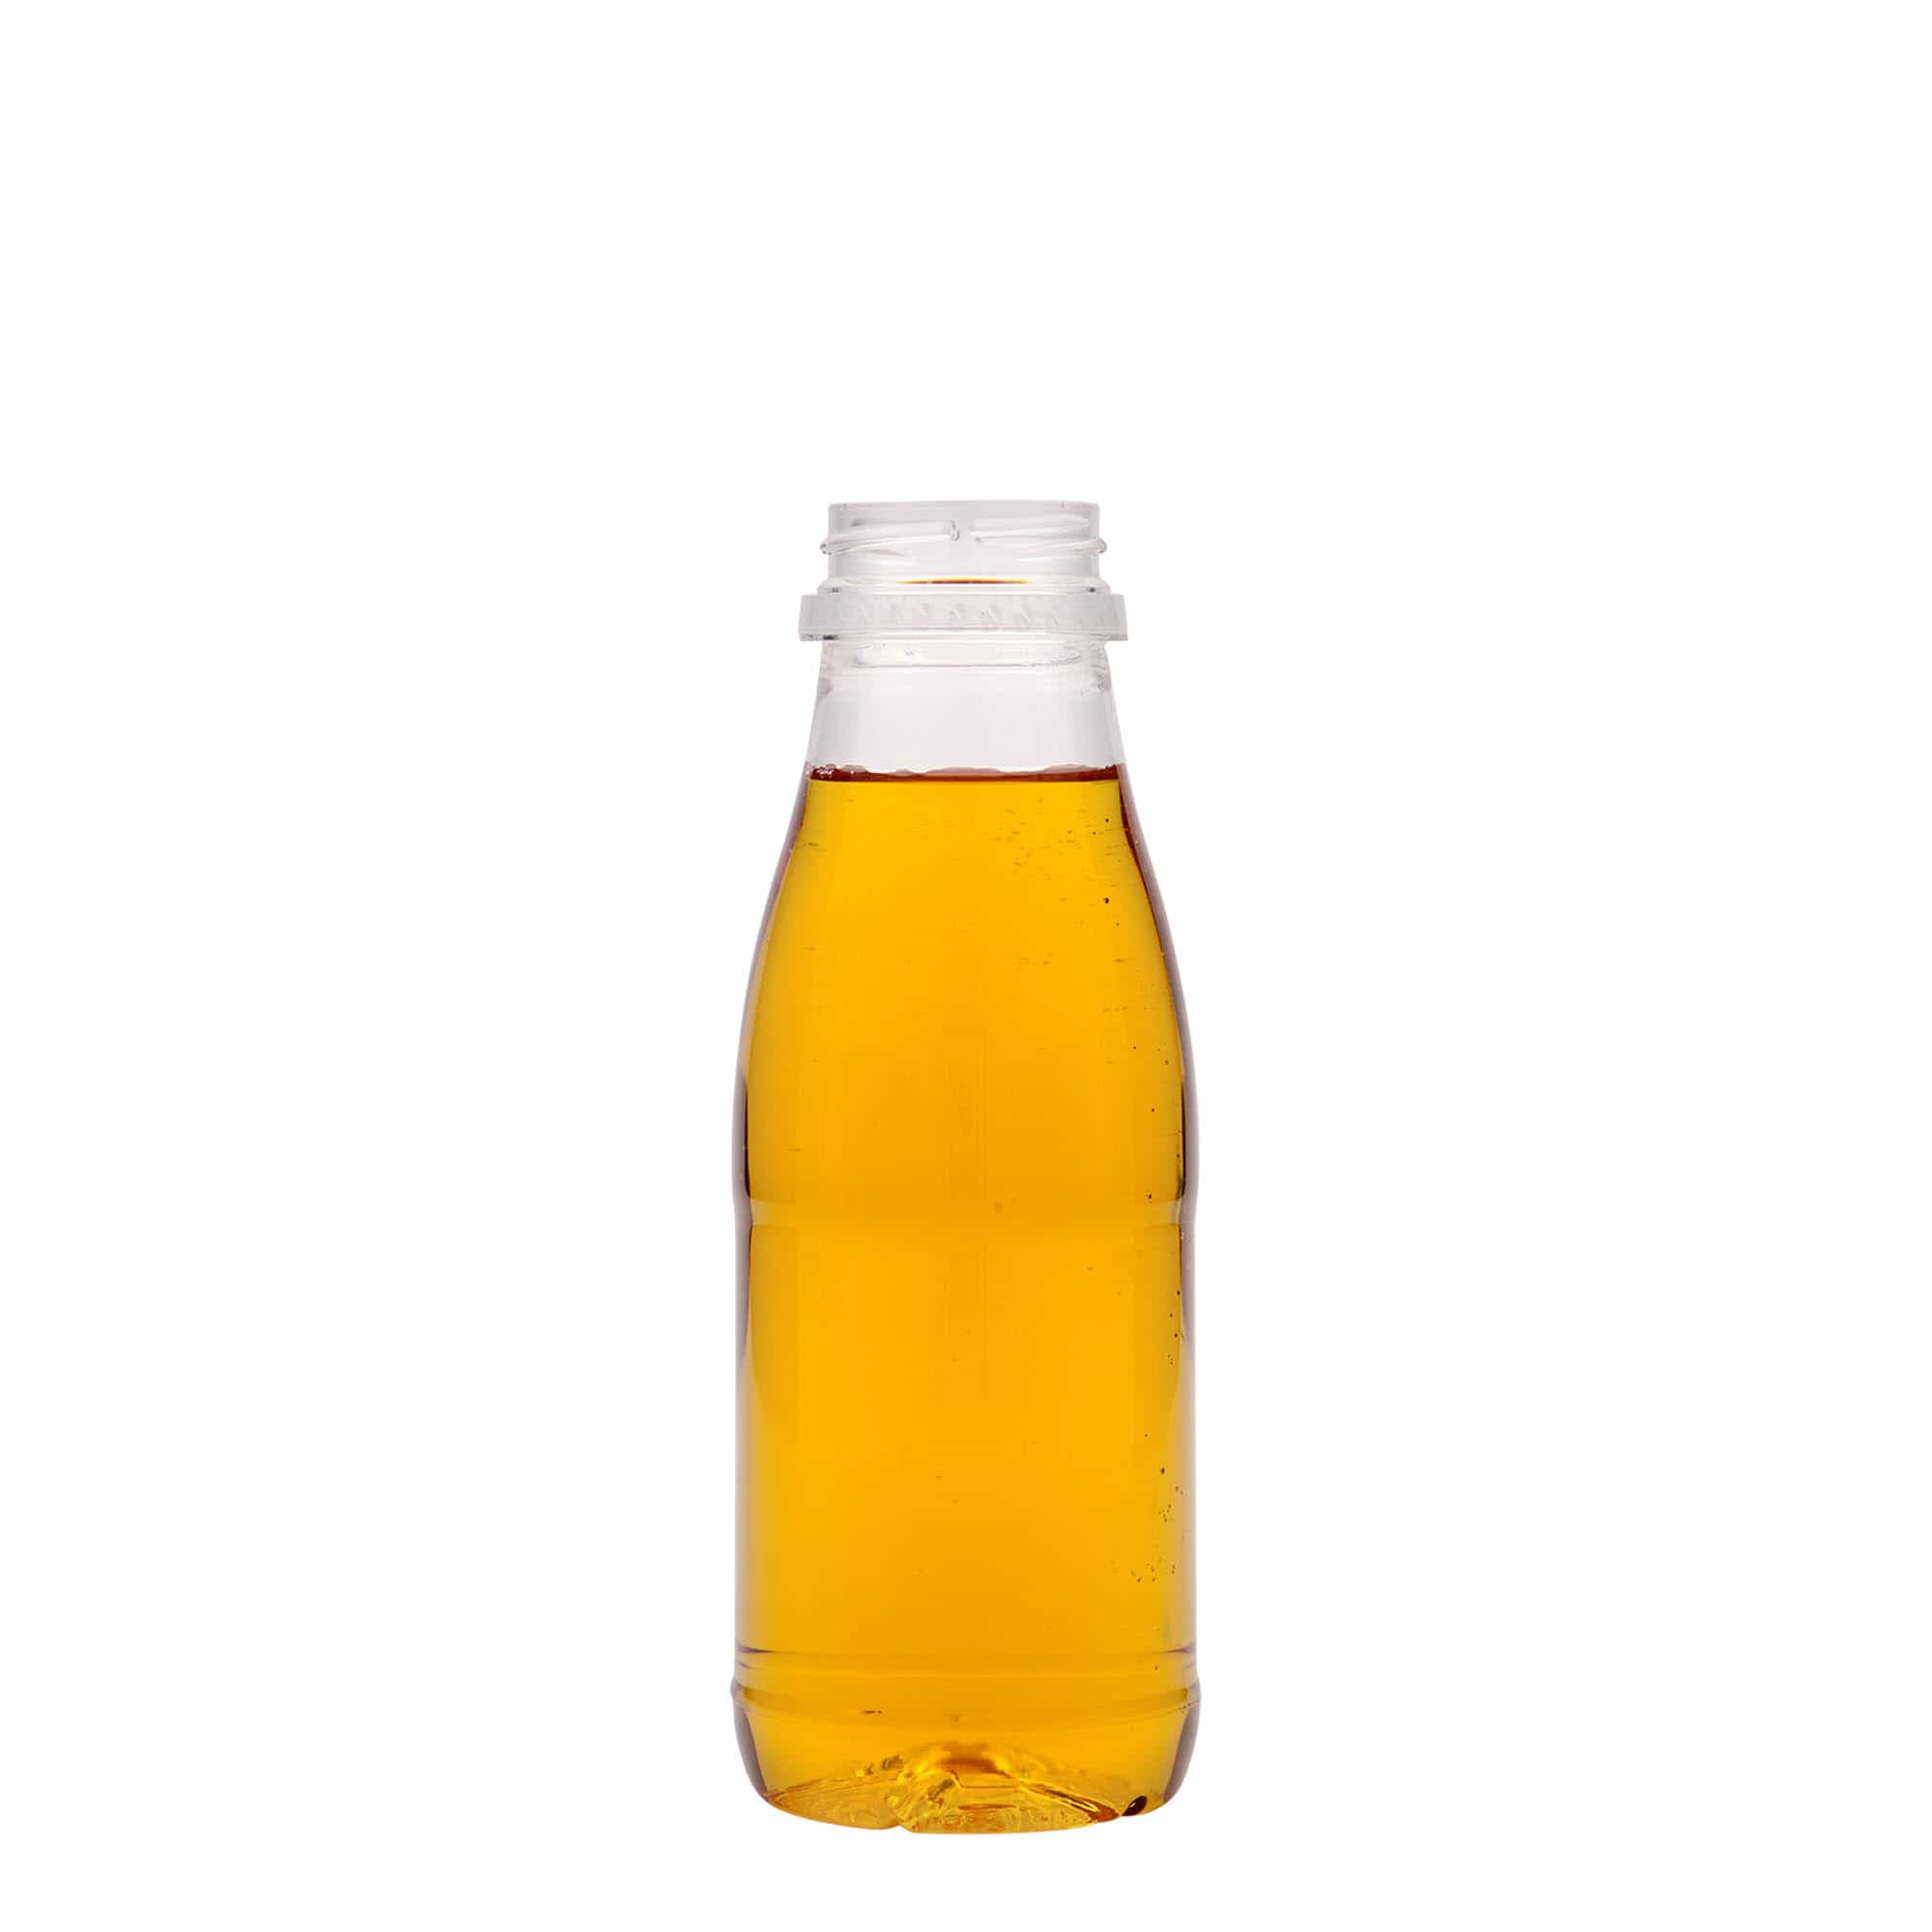 330 ml PET bottle 'Milk and Juice', plastic, closure: 38 mm